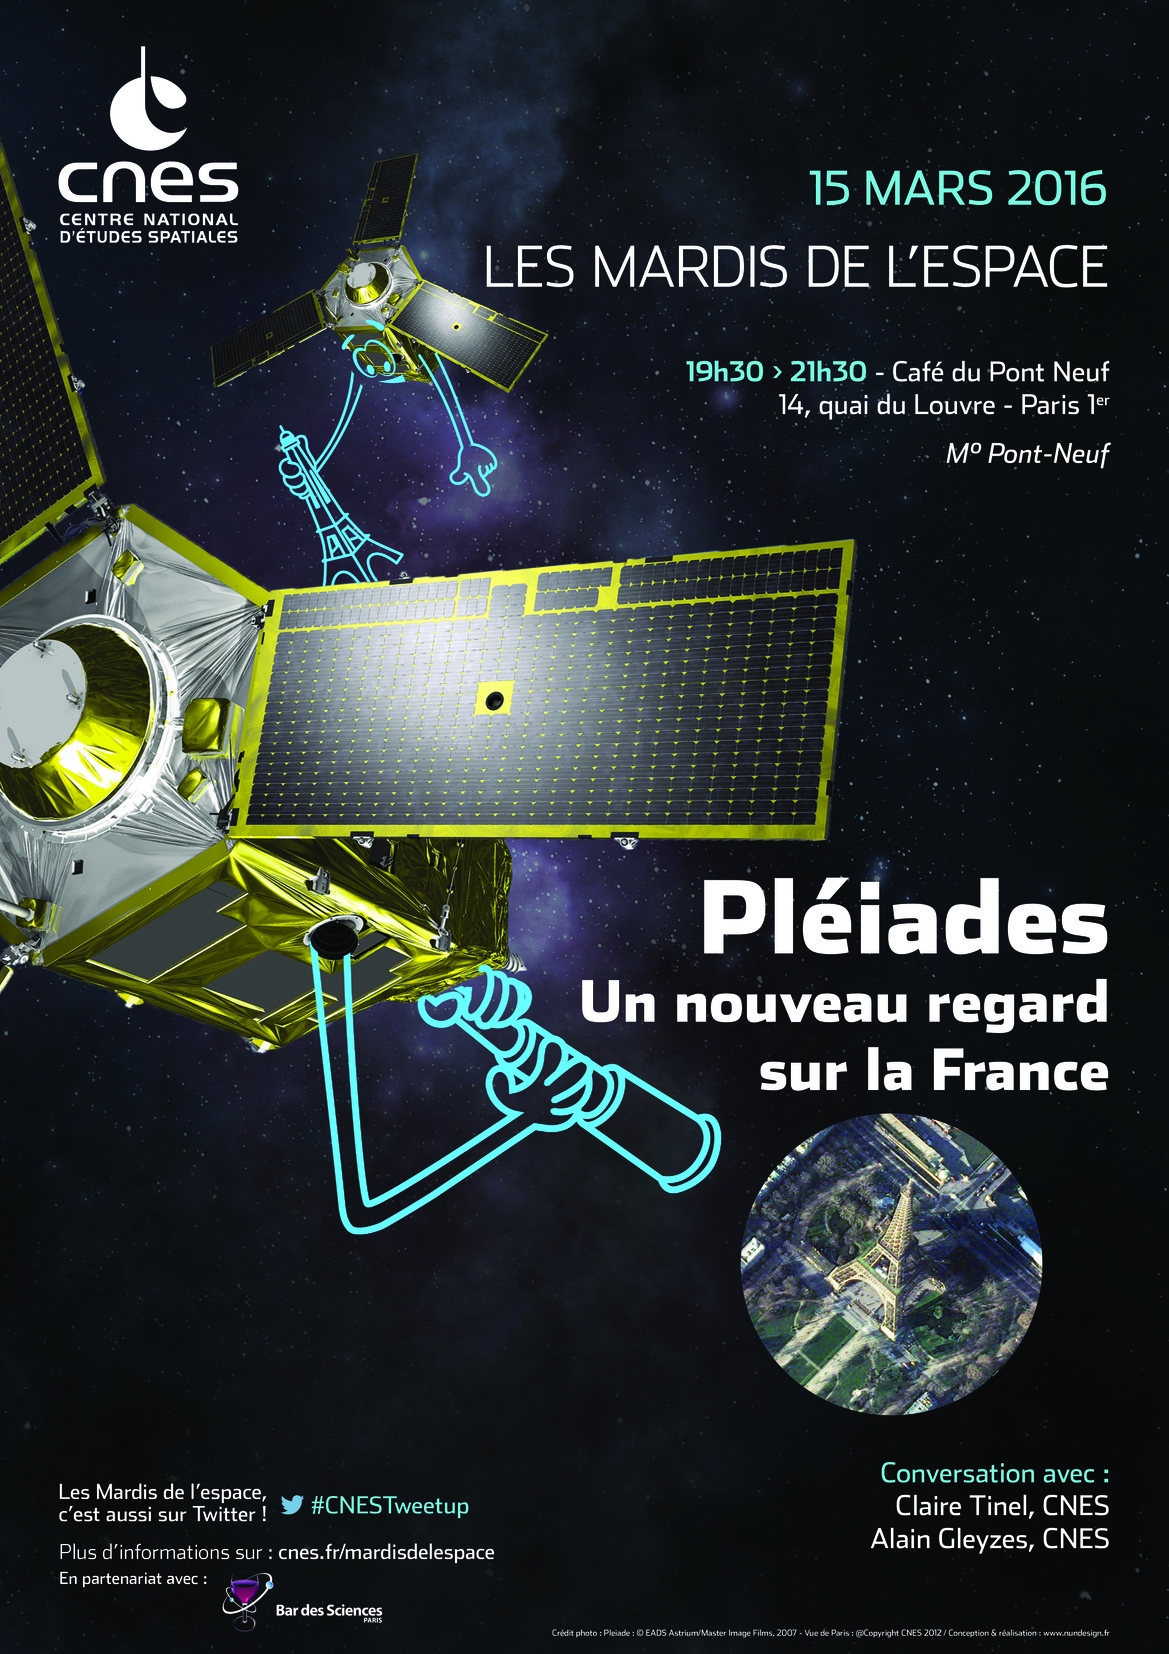 is_mardis-espace-15mar2016.jpg